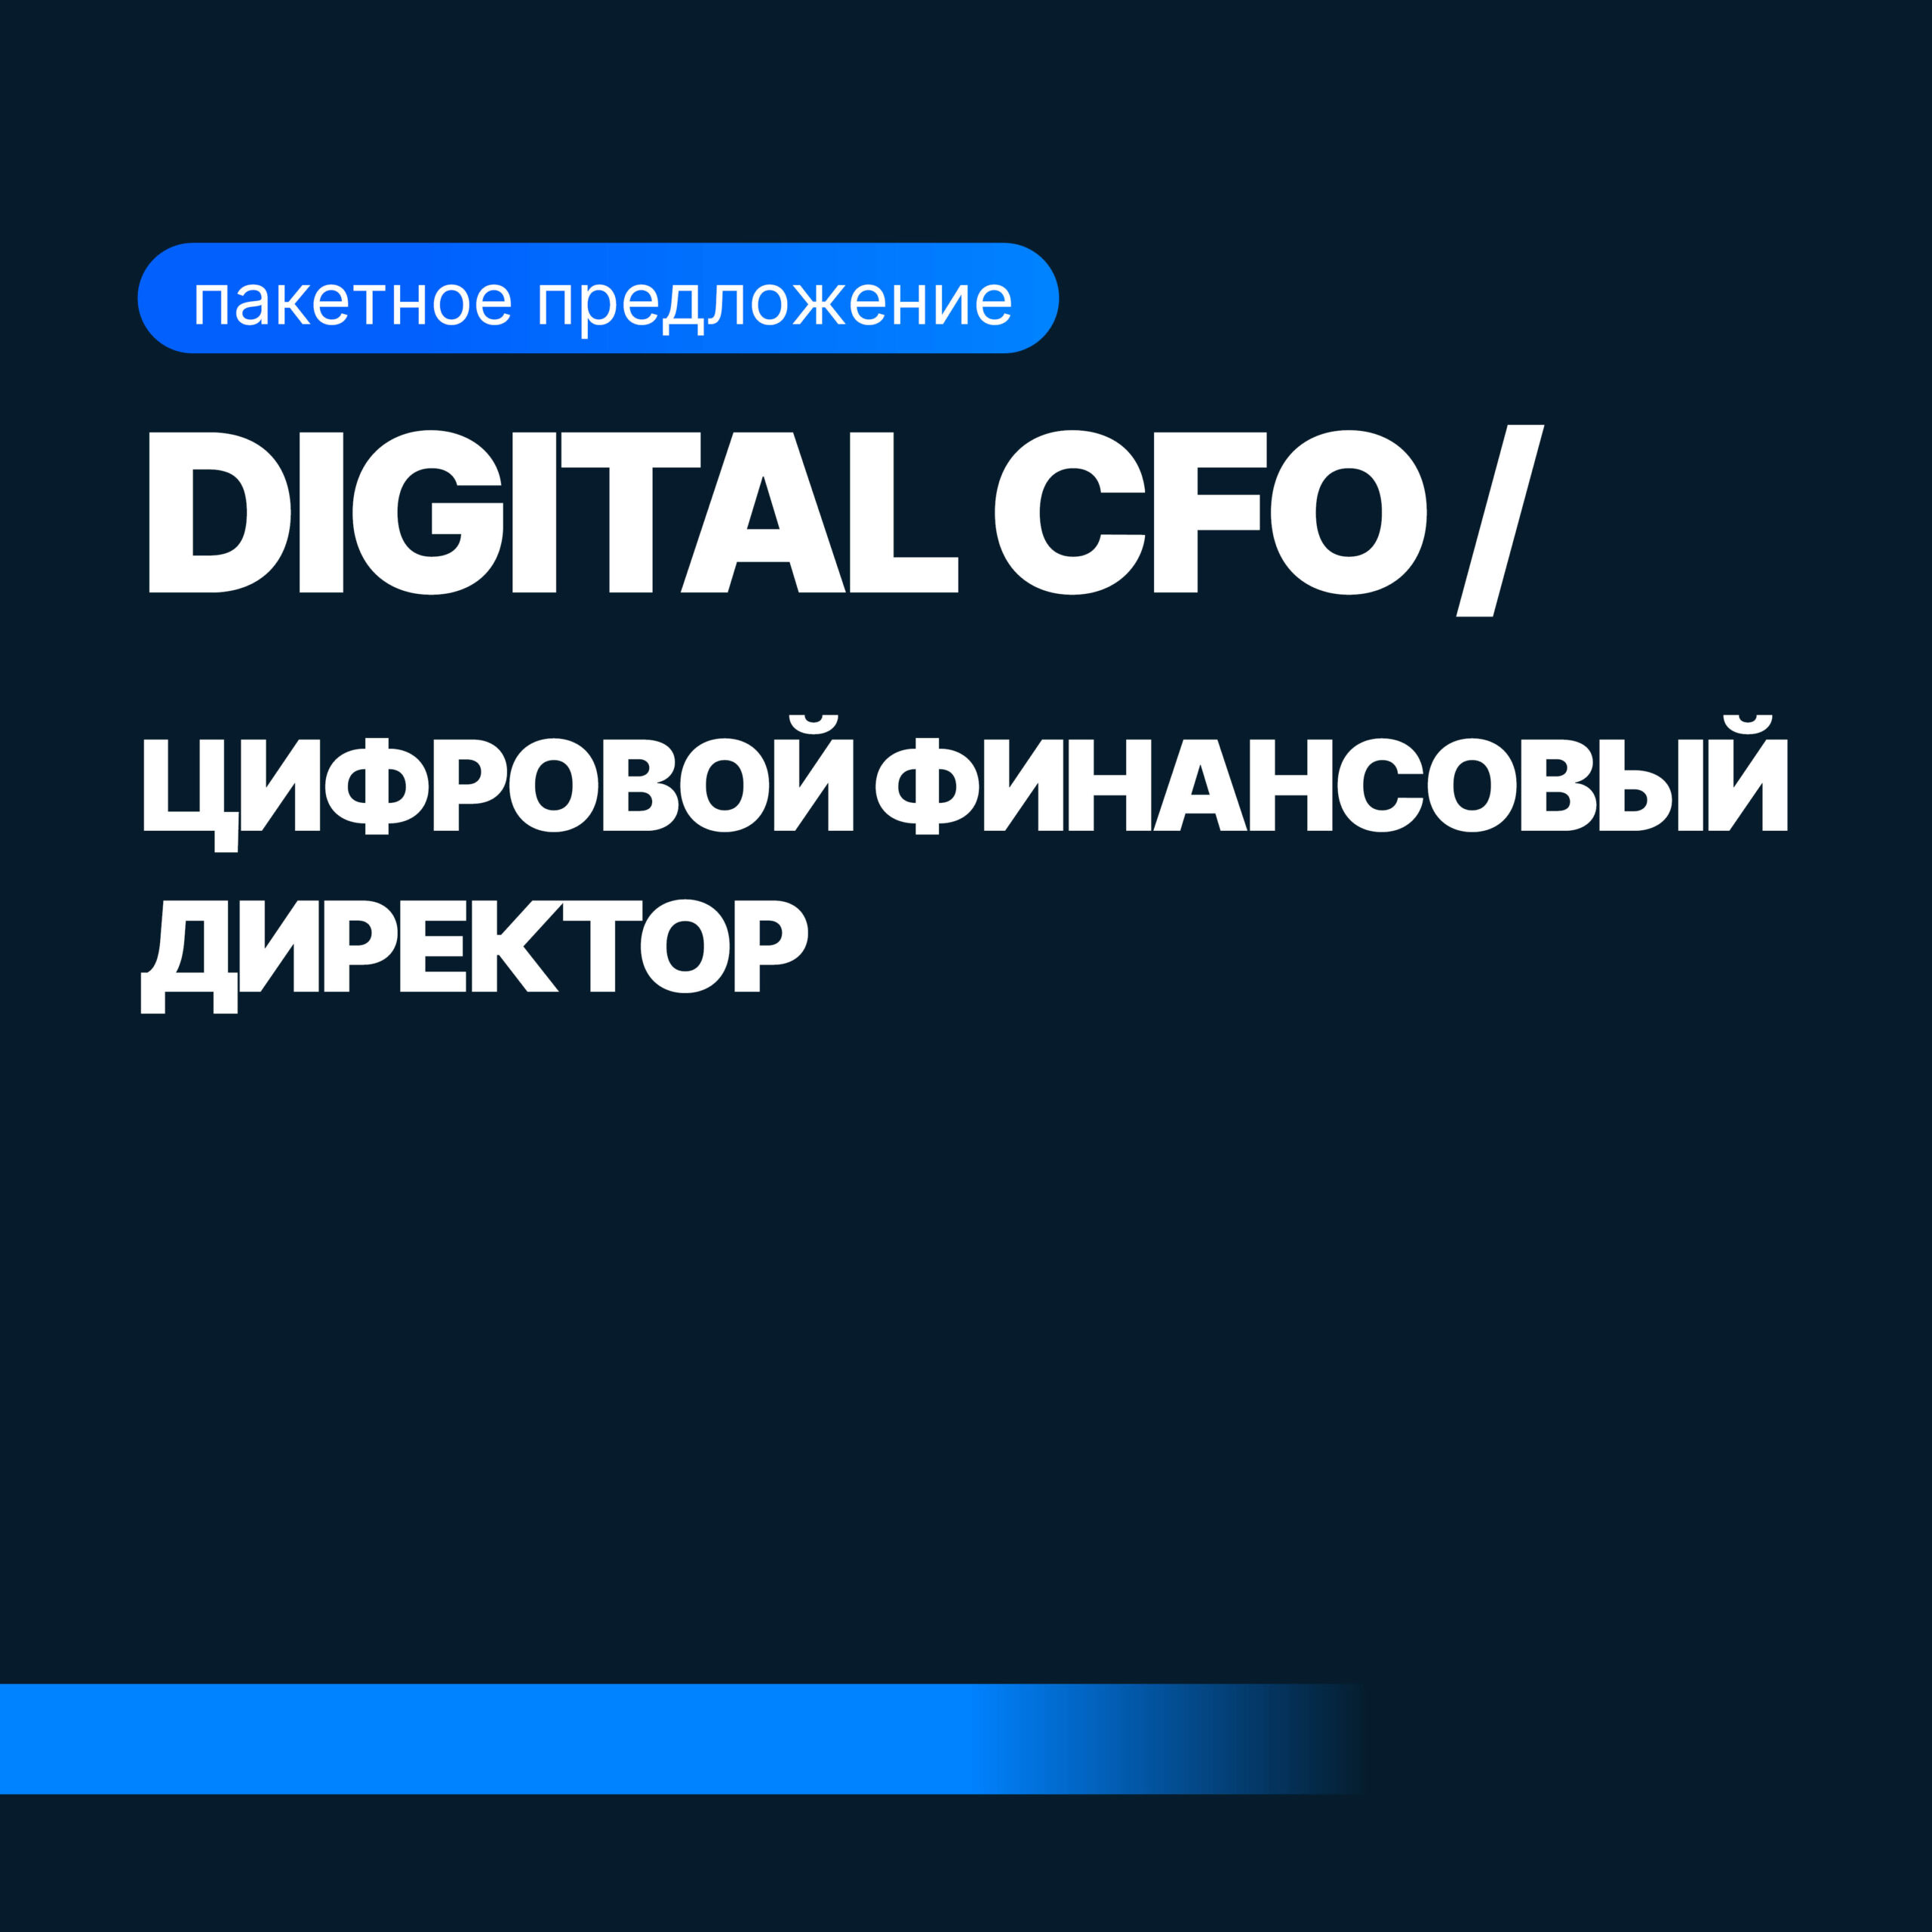 Digital CFO (Финансовый Директор + Бизнес-аналитик) digital cfo